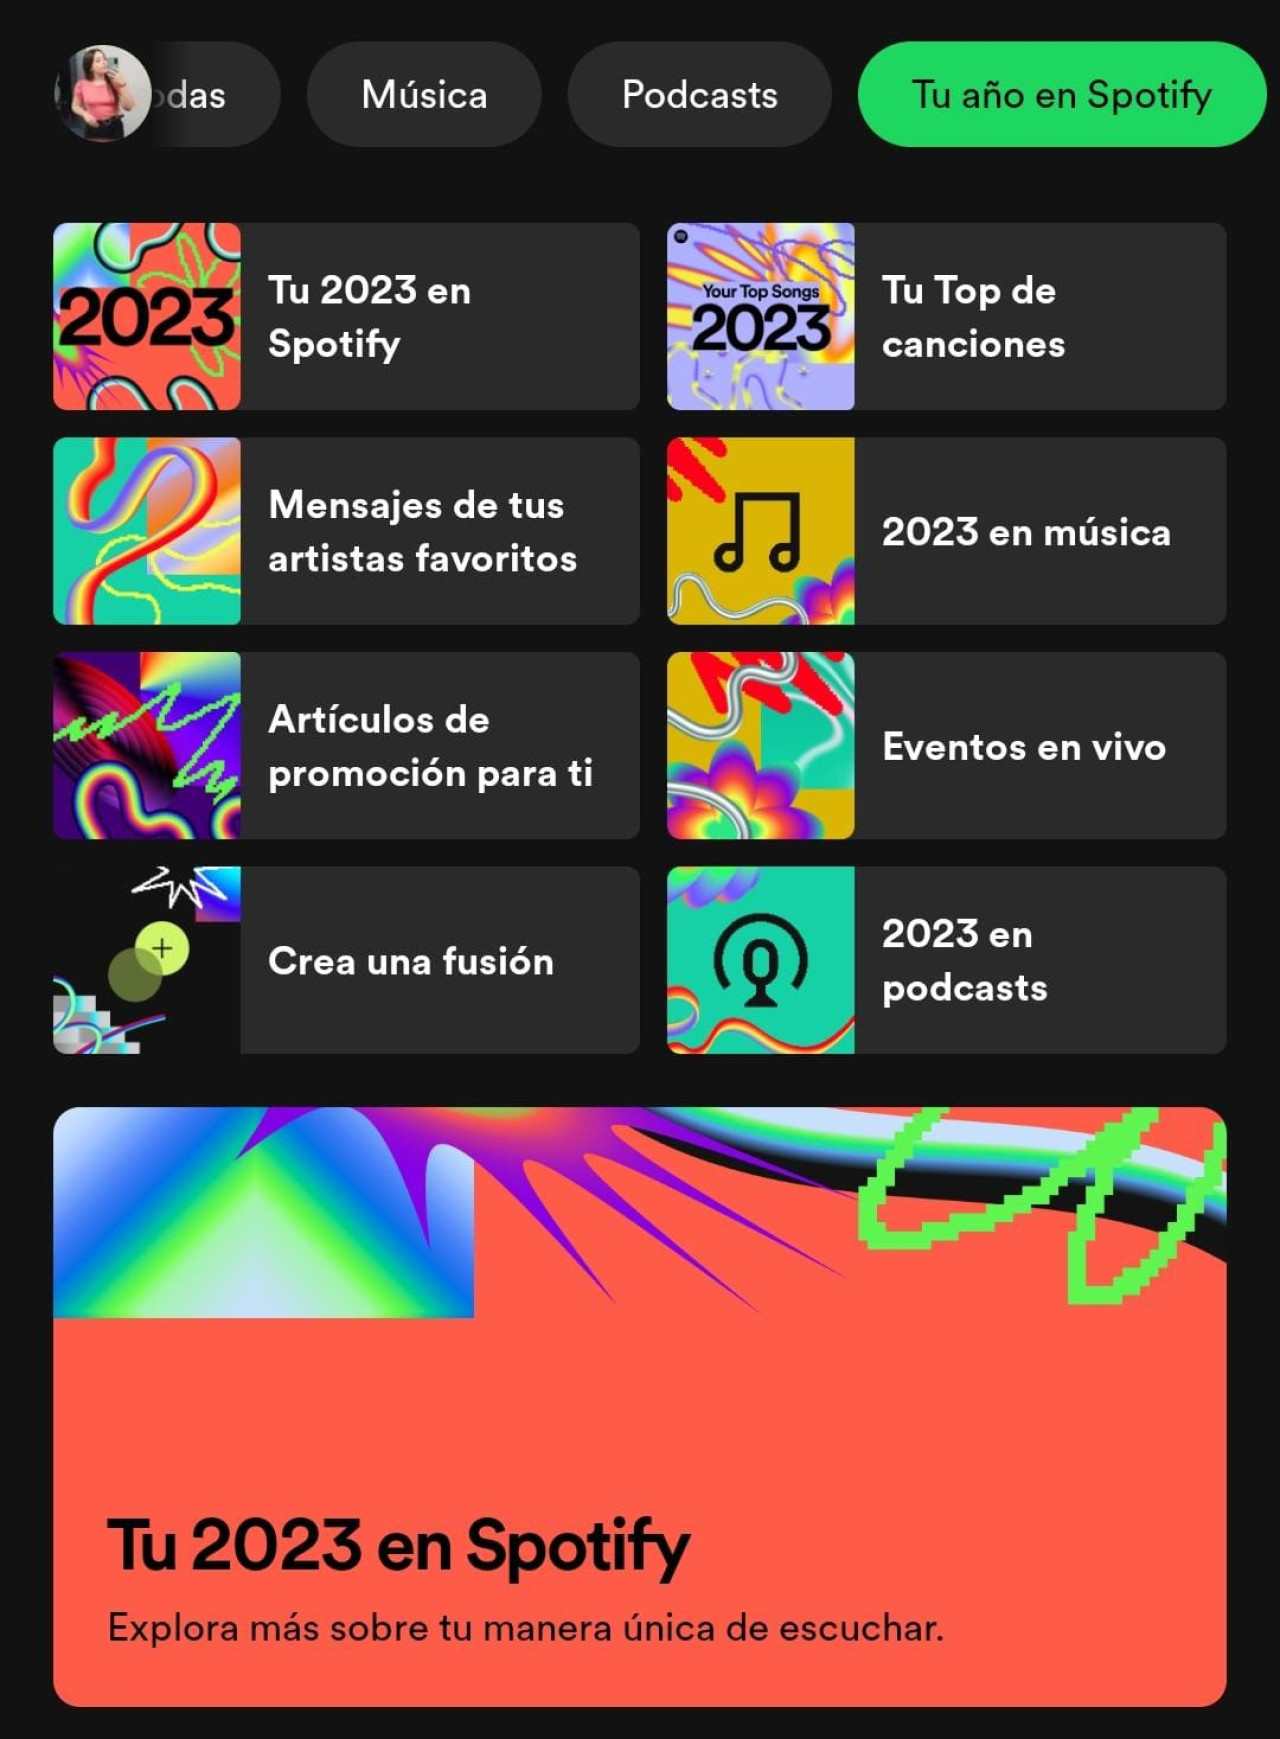 Para visualizar el resumen, debes acceder al apartado "Tu año en Spotify". Foto: Captura de pantalla Spotify.